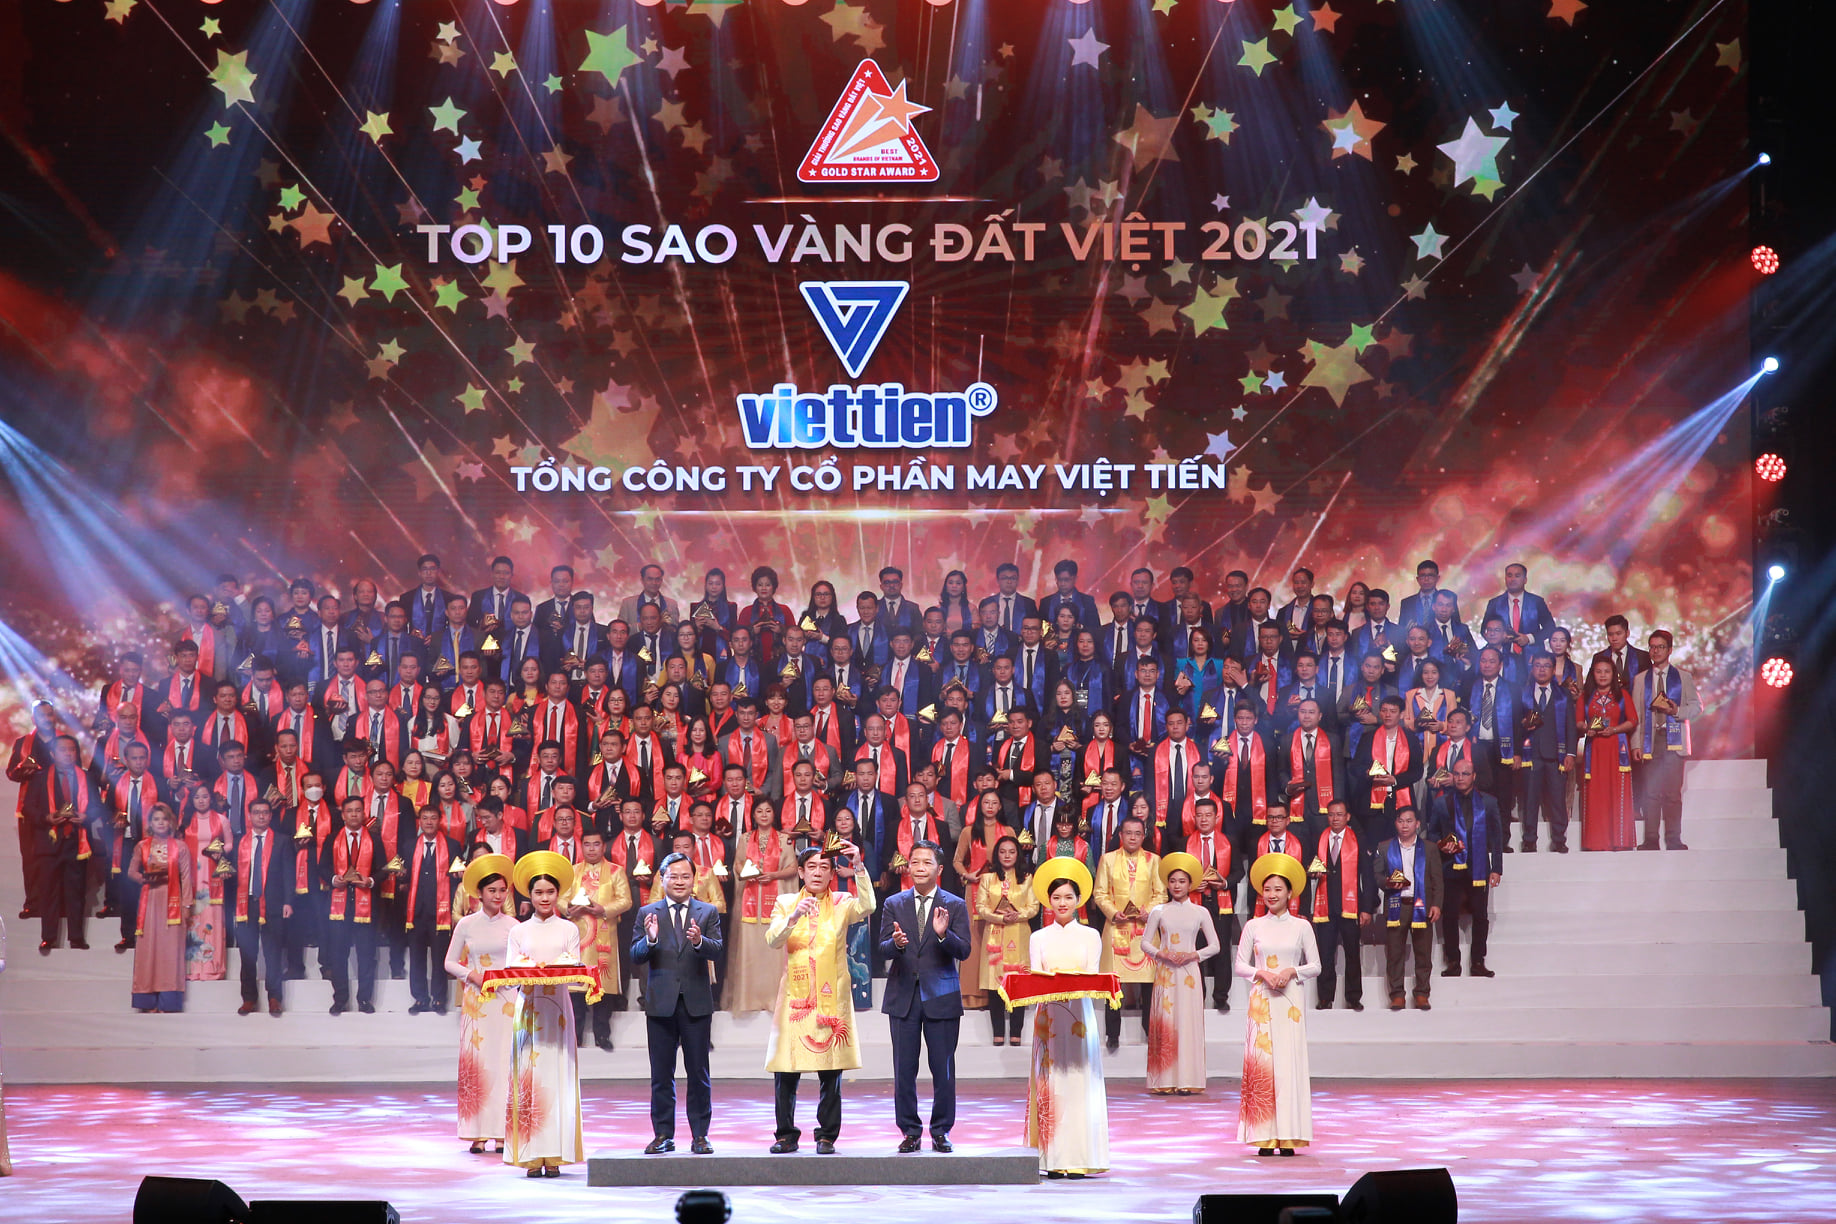 Hơn 45 năm xây dựng và phát triển, Việt Tiến là doanh nghiệp tiêu biểu của ngành Dệt may Việt Nam, liên tục đạt TOP10 Giải thưởng Sao Vàng Đất Việt. Tầm nhìn của Việt Tiến là Tiên phòng - Hội nhập - Luôn dẫn đầu trong ngành công nghiệp thời trang Việt Nam.